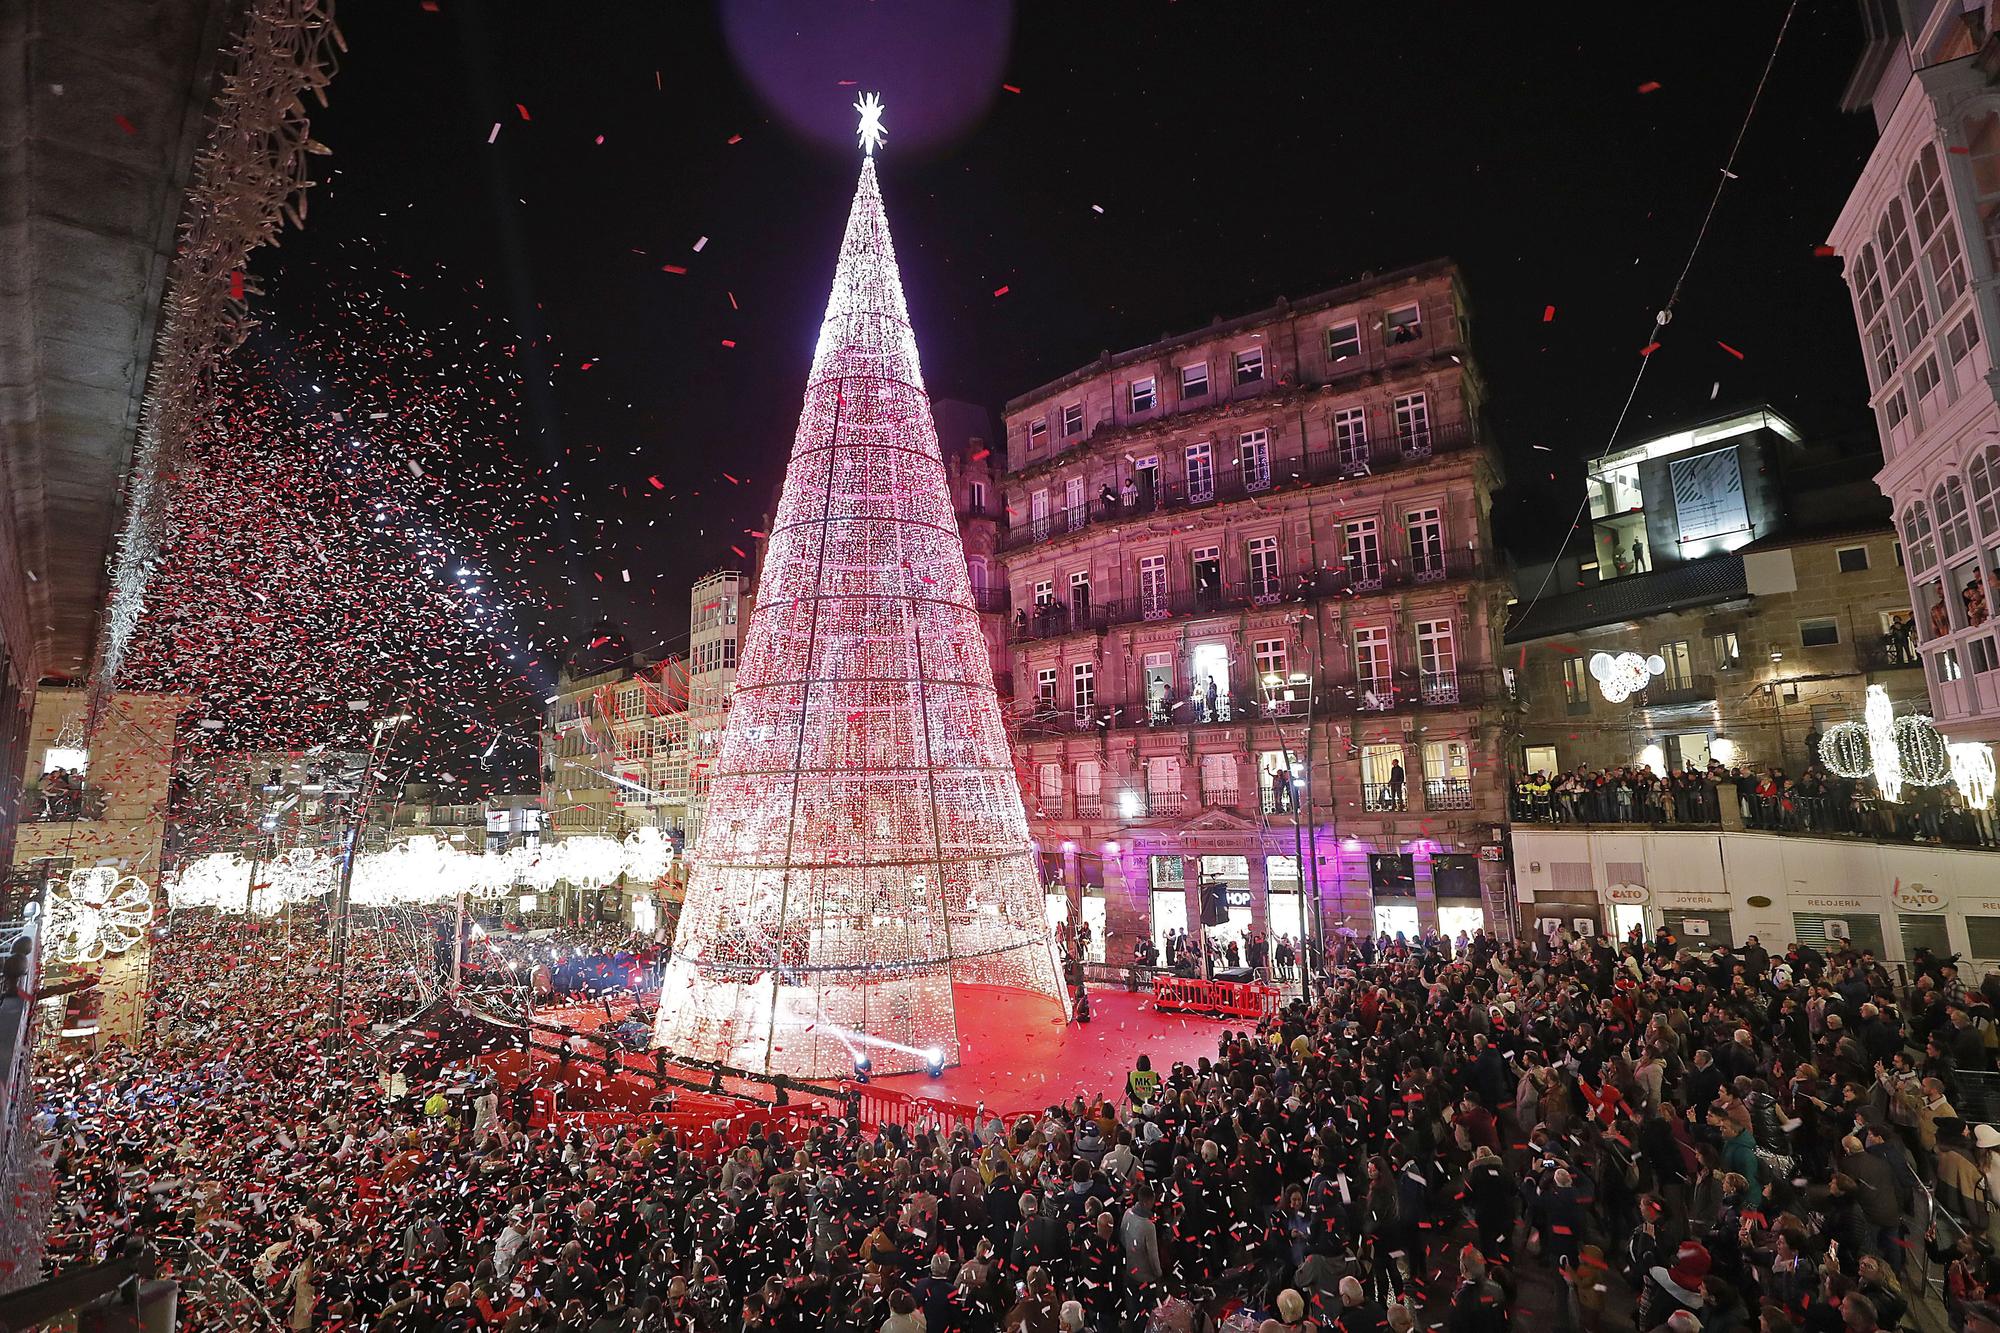 Luces de Navidad en Vigo: este es el recorrido completo por la iluminación más famosa "del planeta"